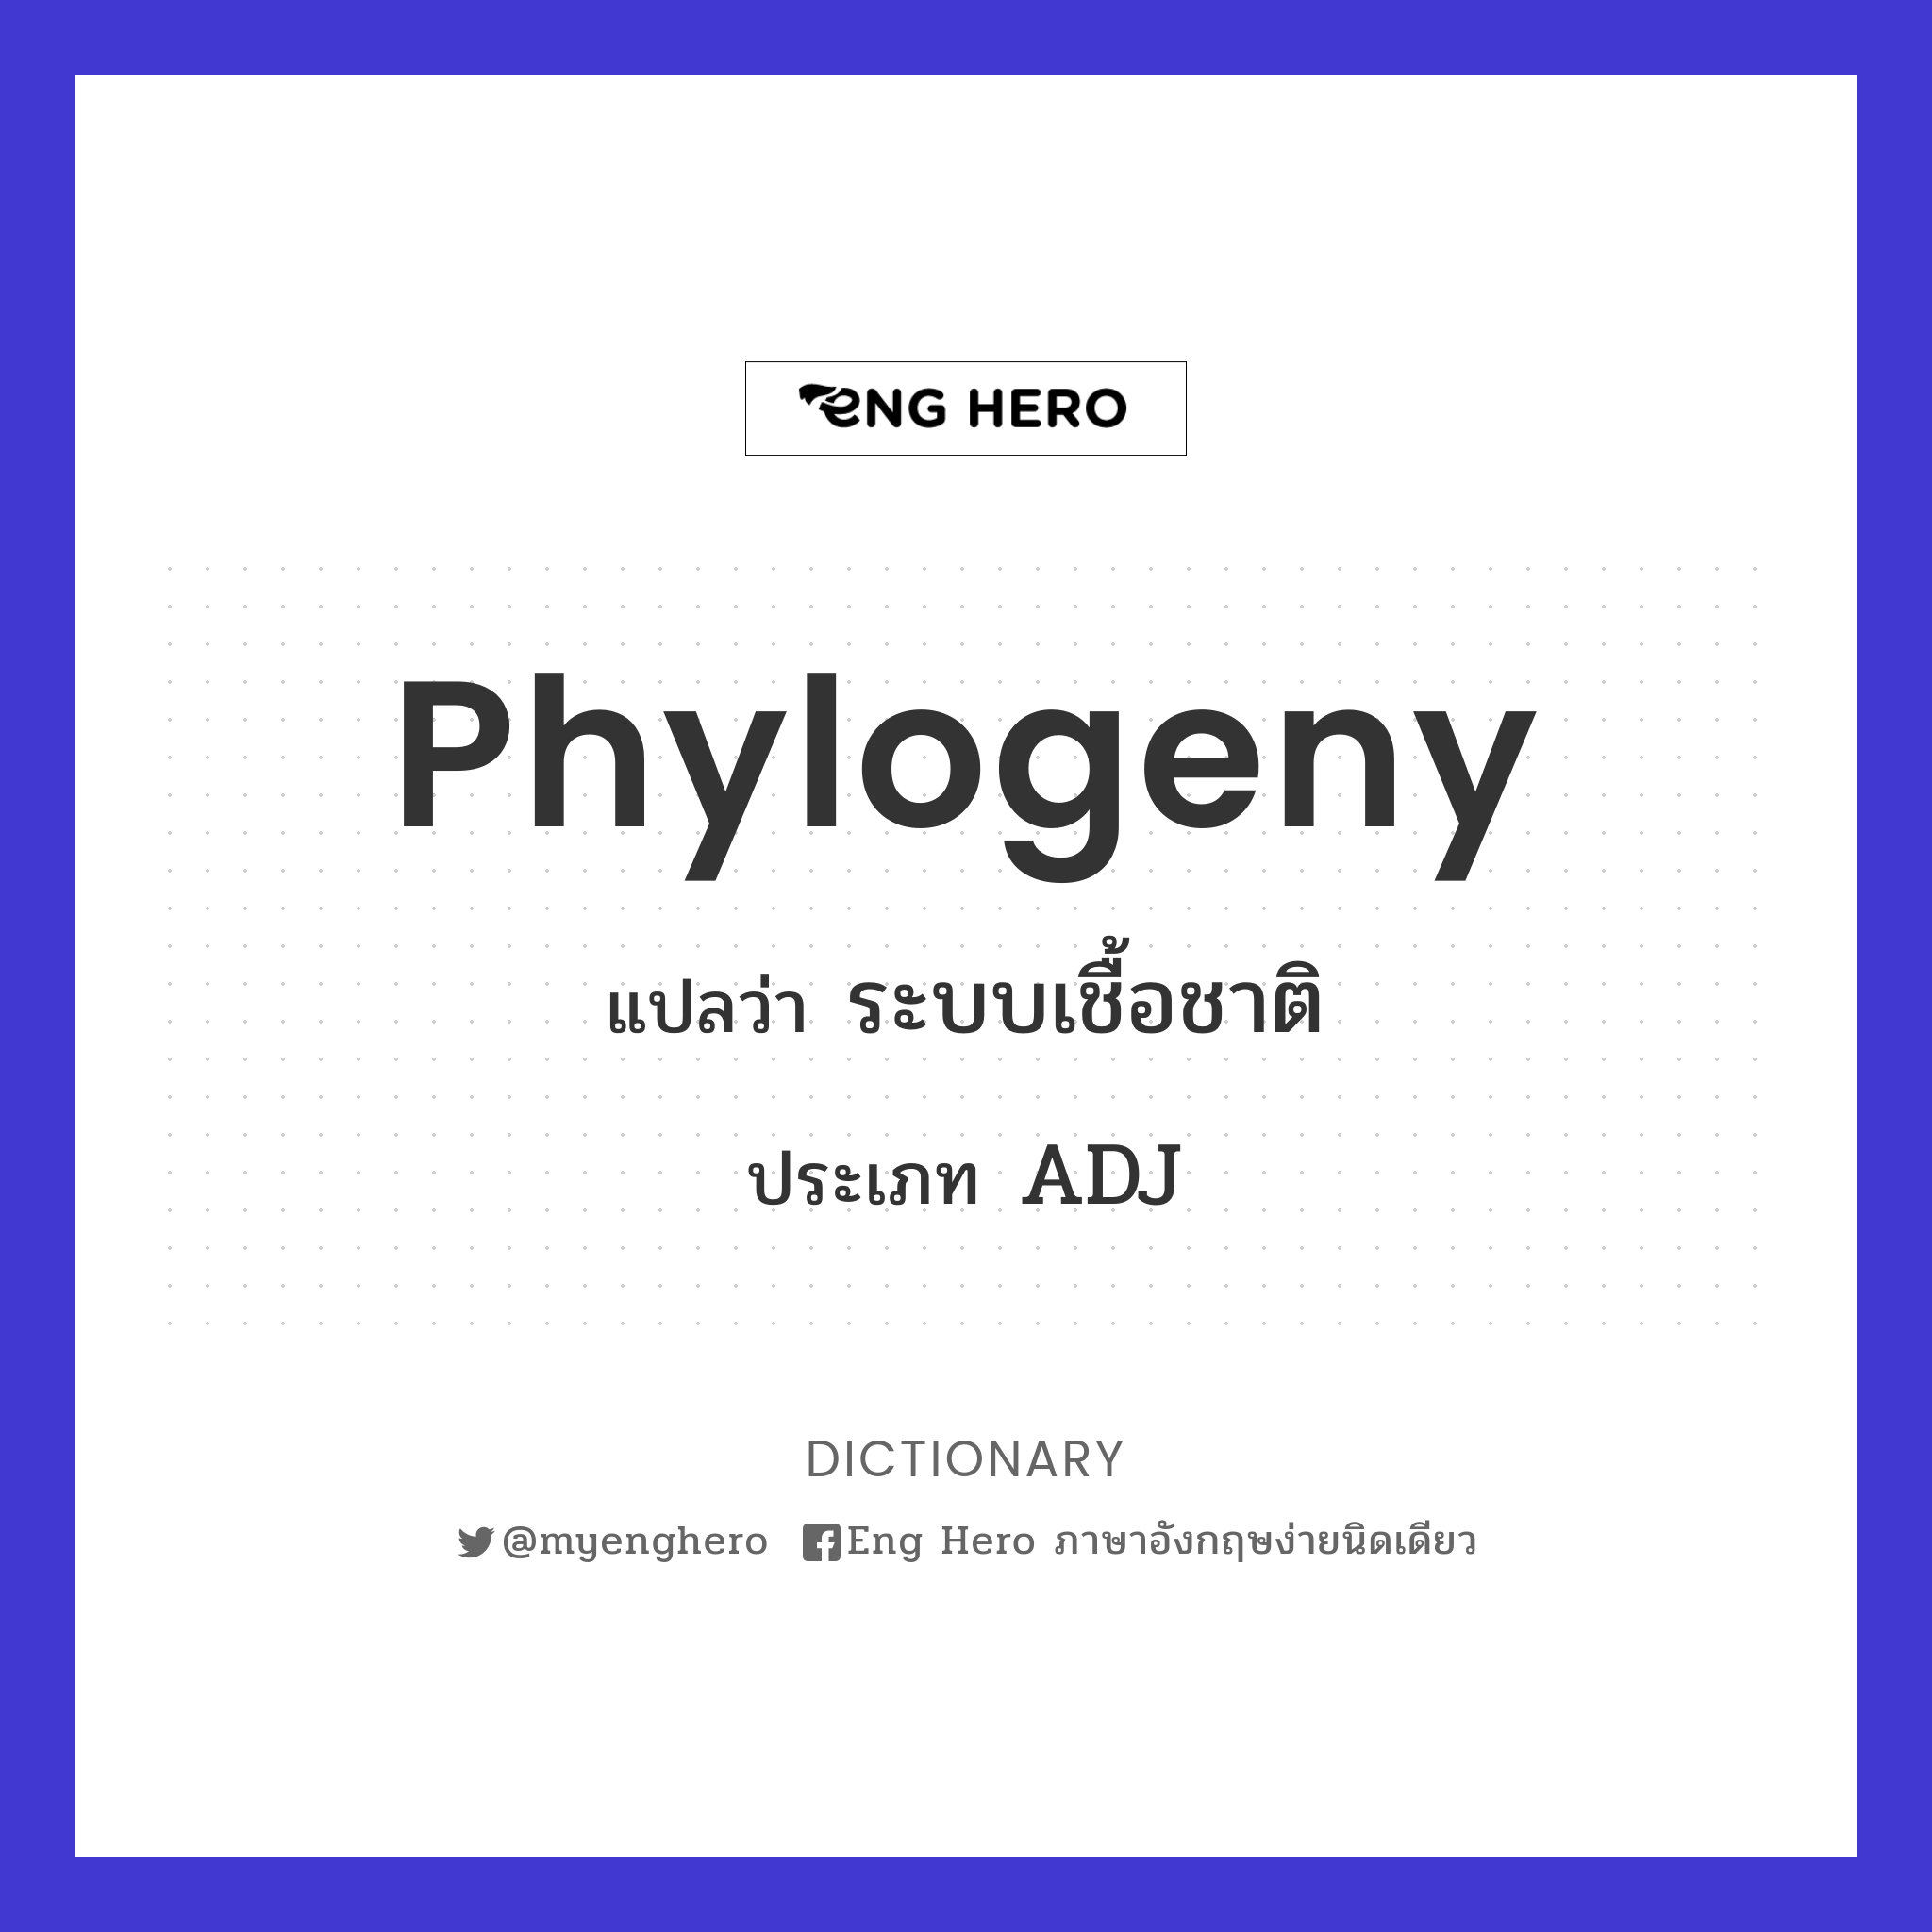 phylogeny